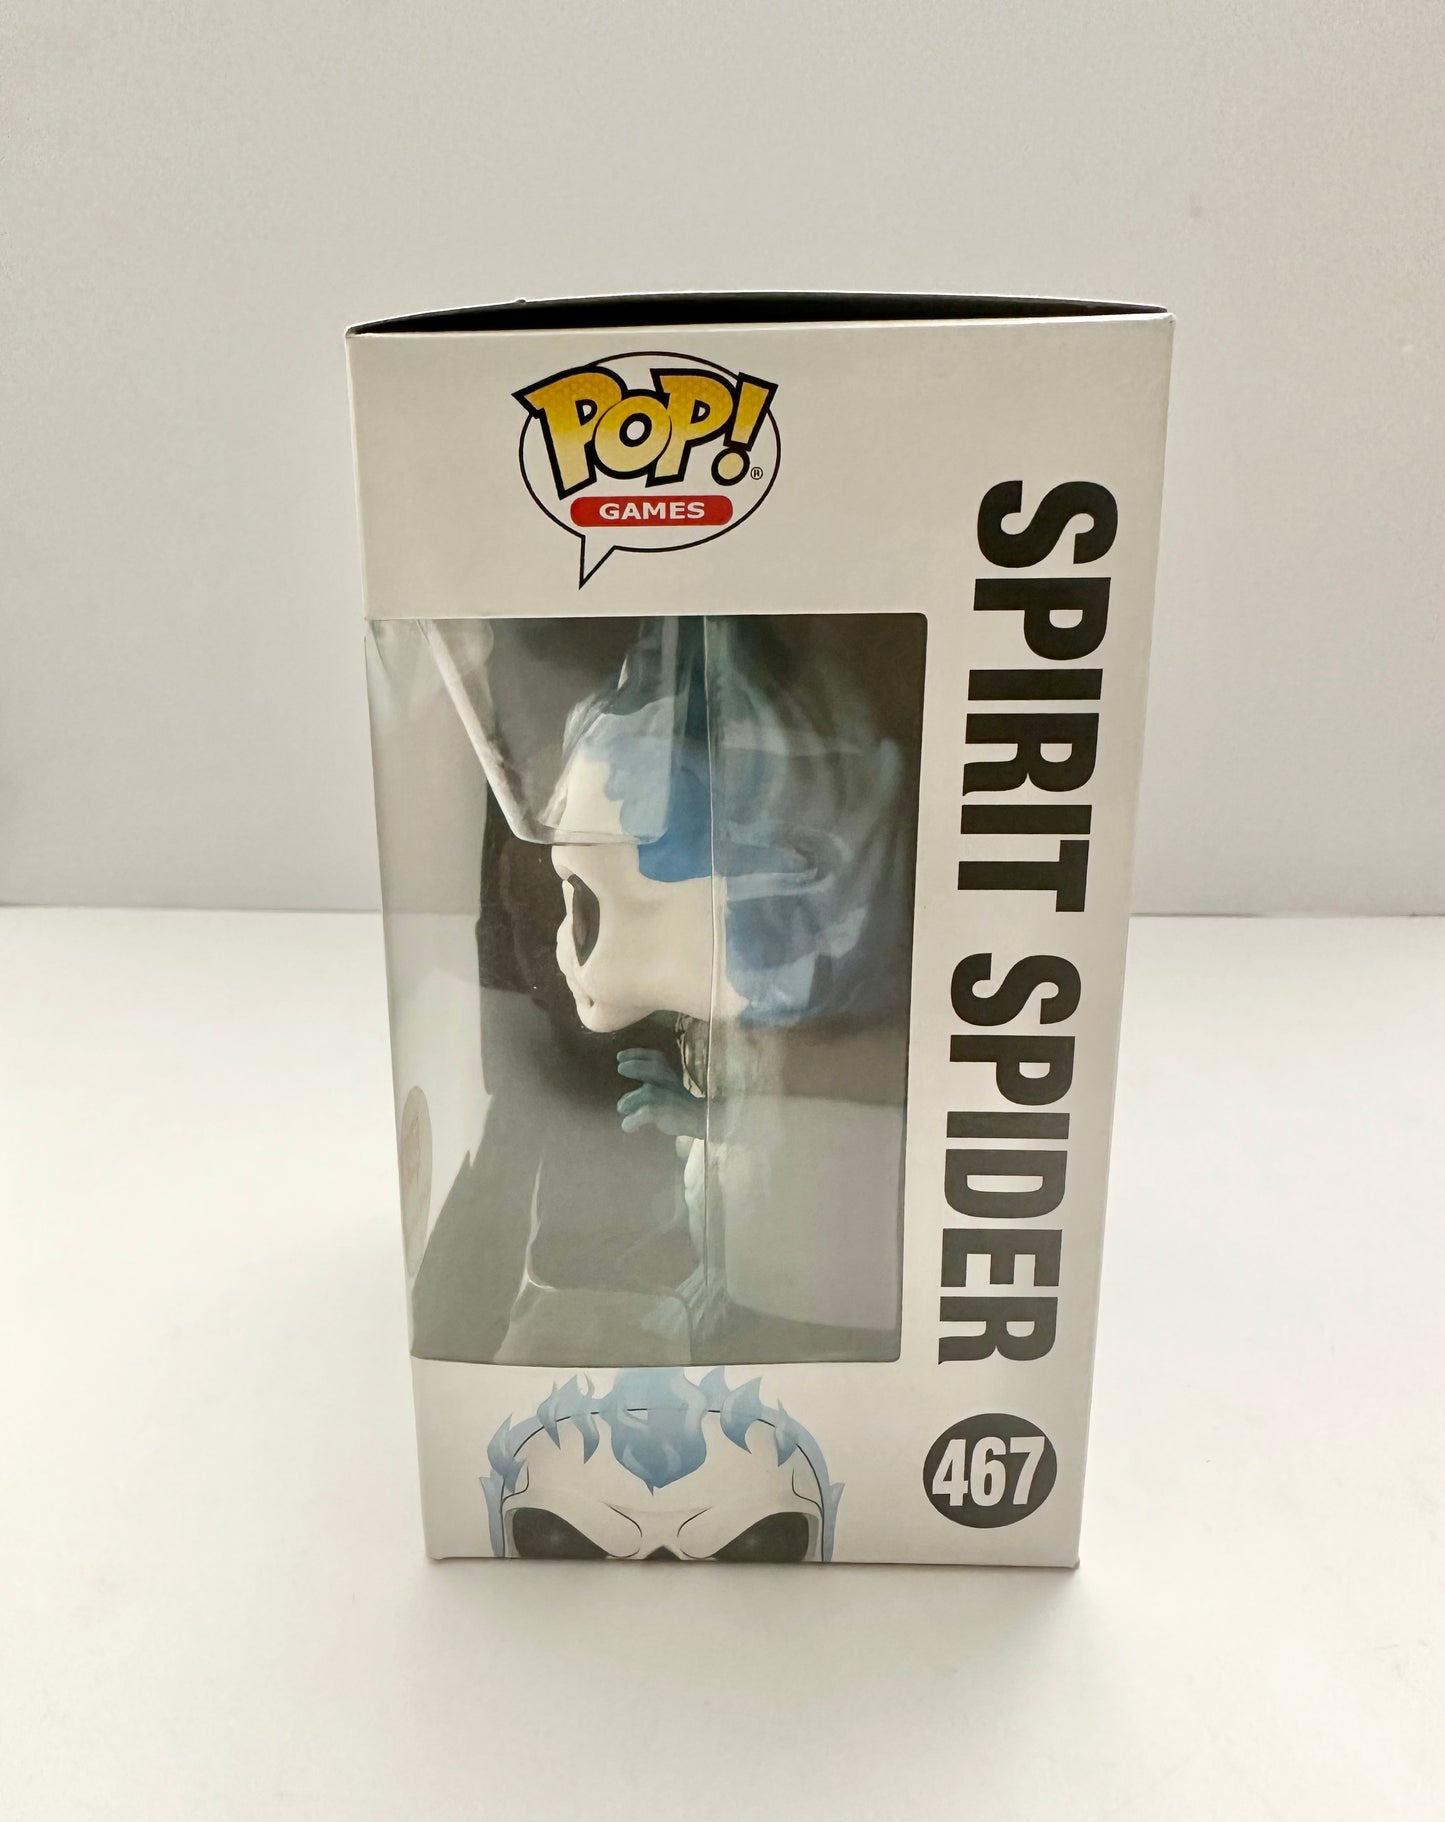 Funko Pop! Spirit Spider - 467